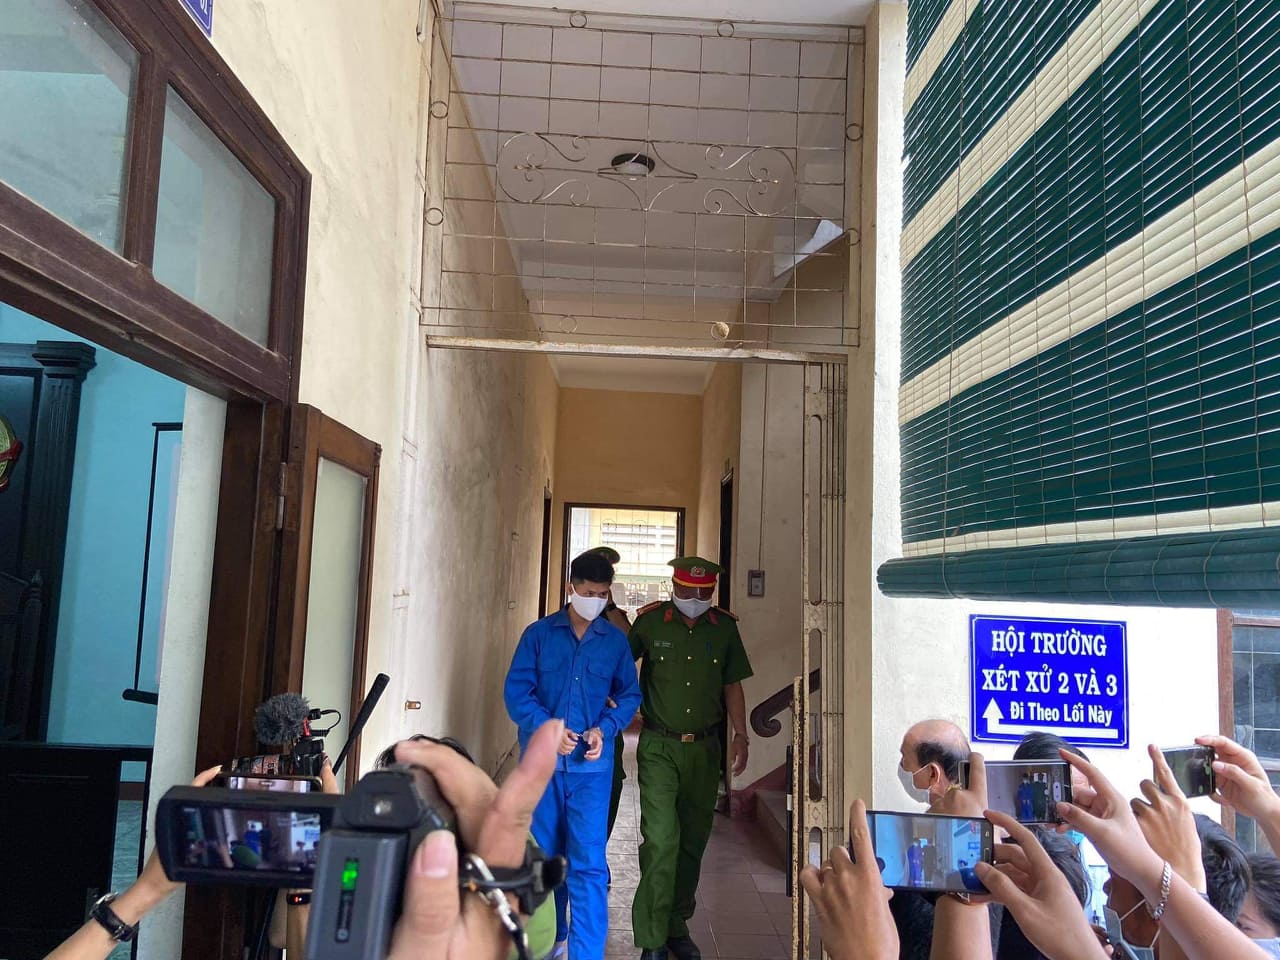 Lê Quang Huy Phương bị đề nghị truy tố với 3 tội danh, gồm 